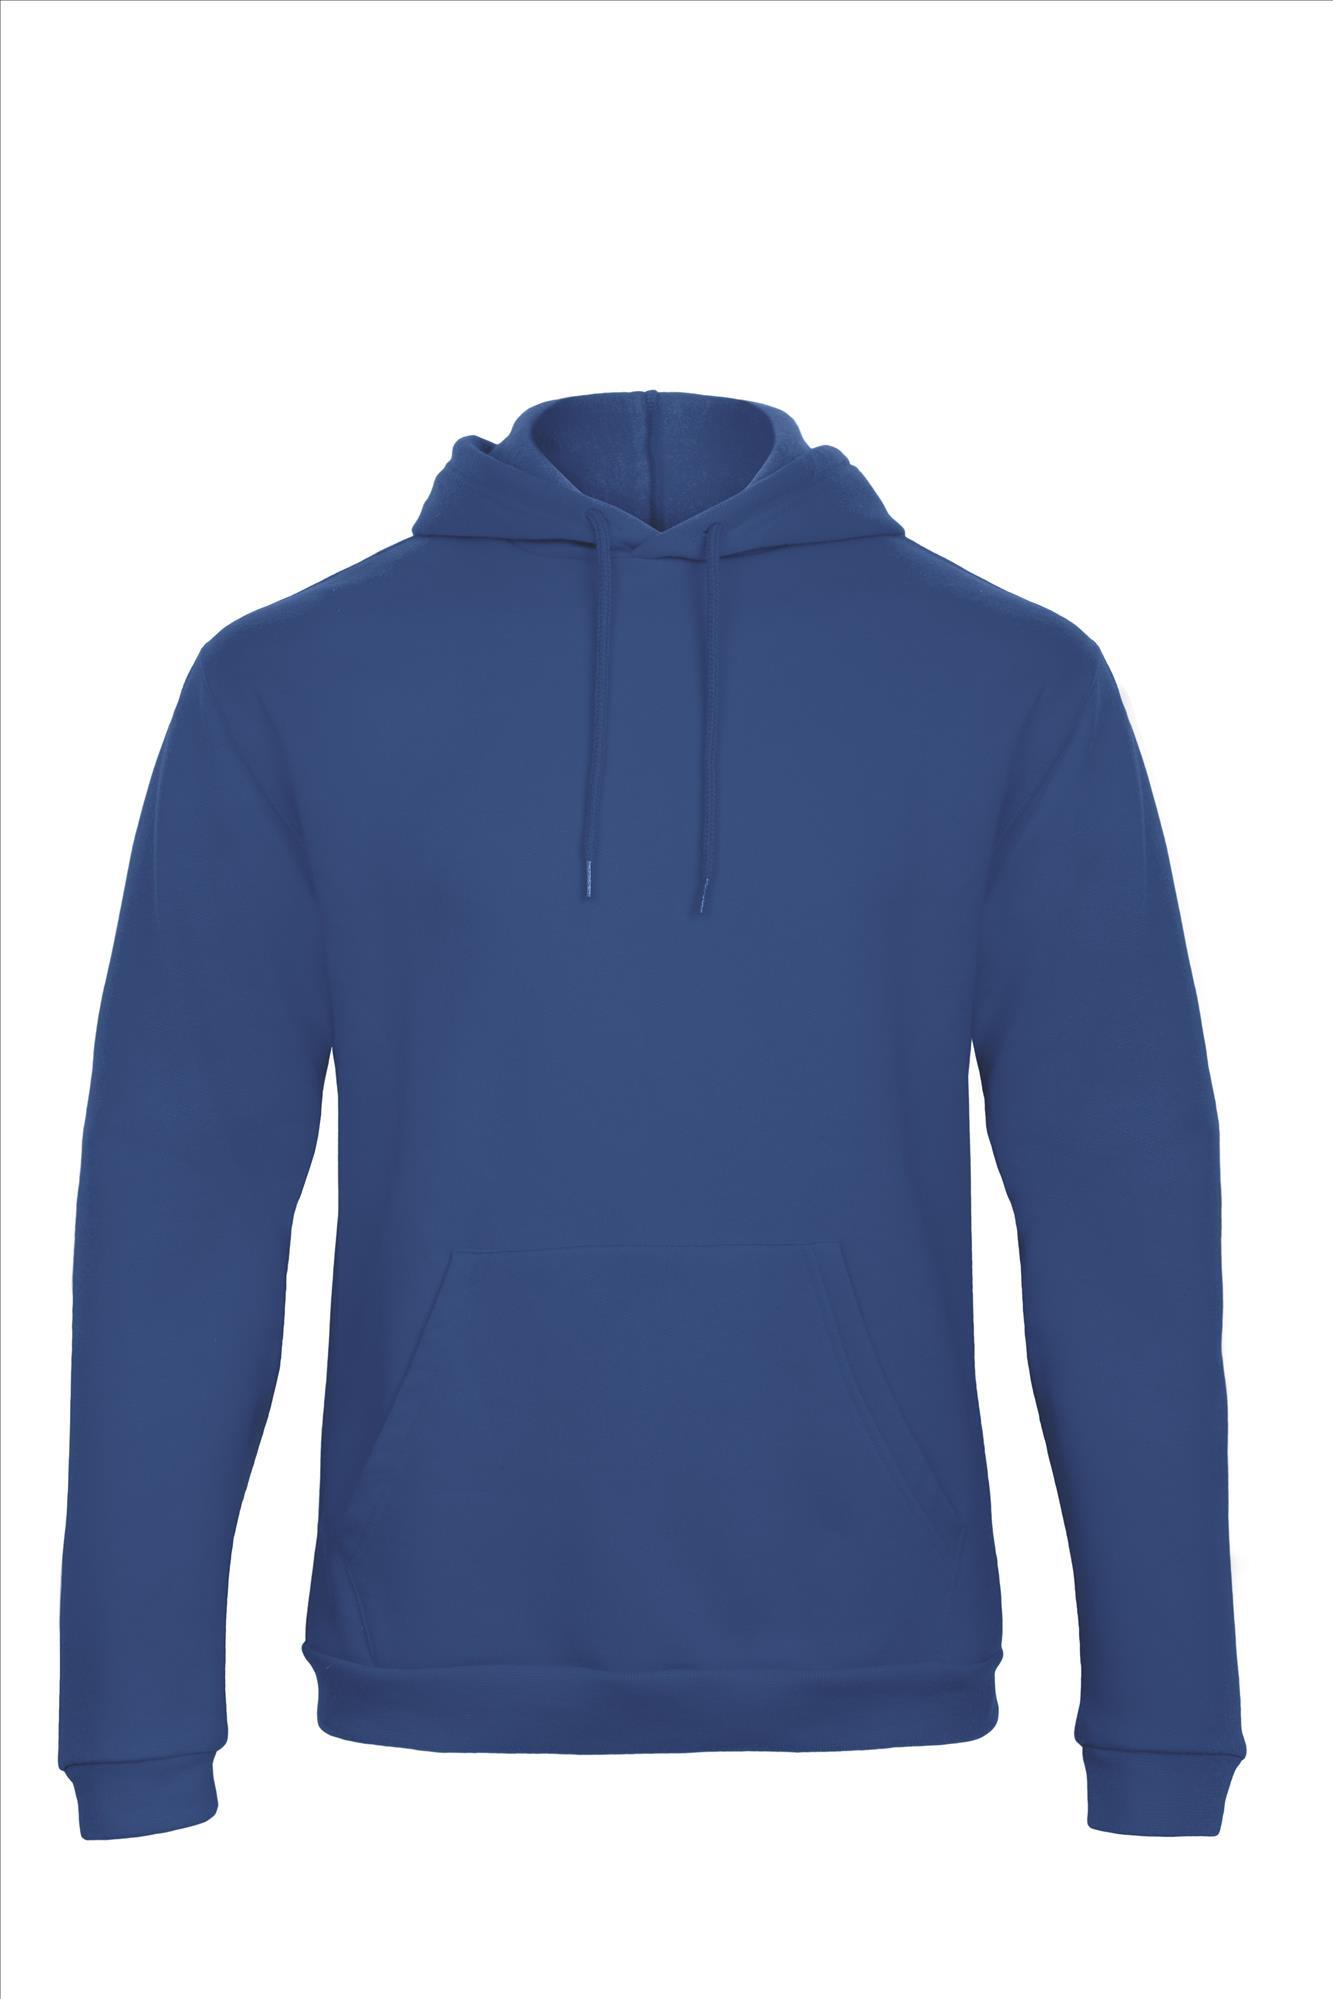 Blauwe hoodie Sweatshirt Unisex met capuchon heren bedrukbaar